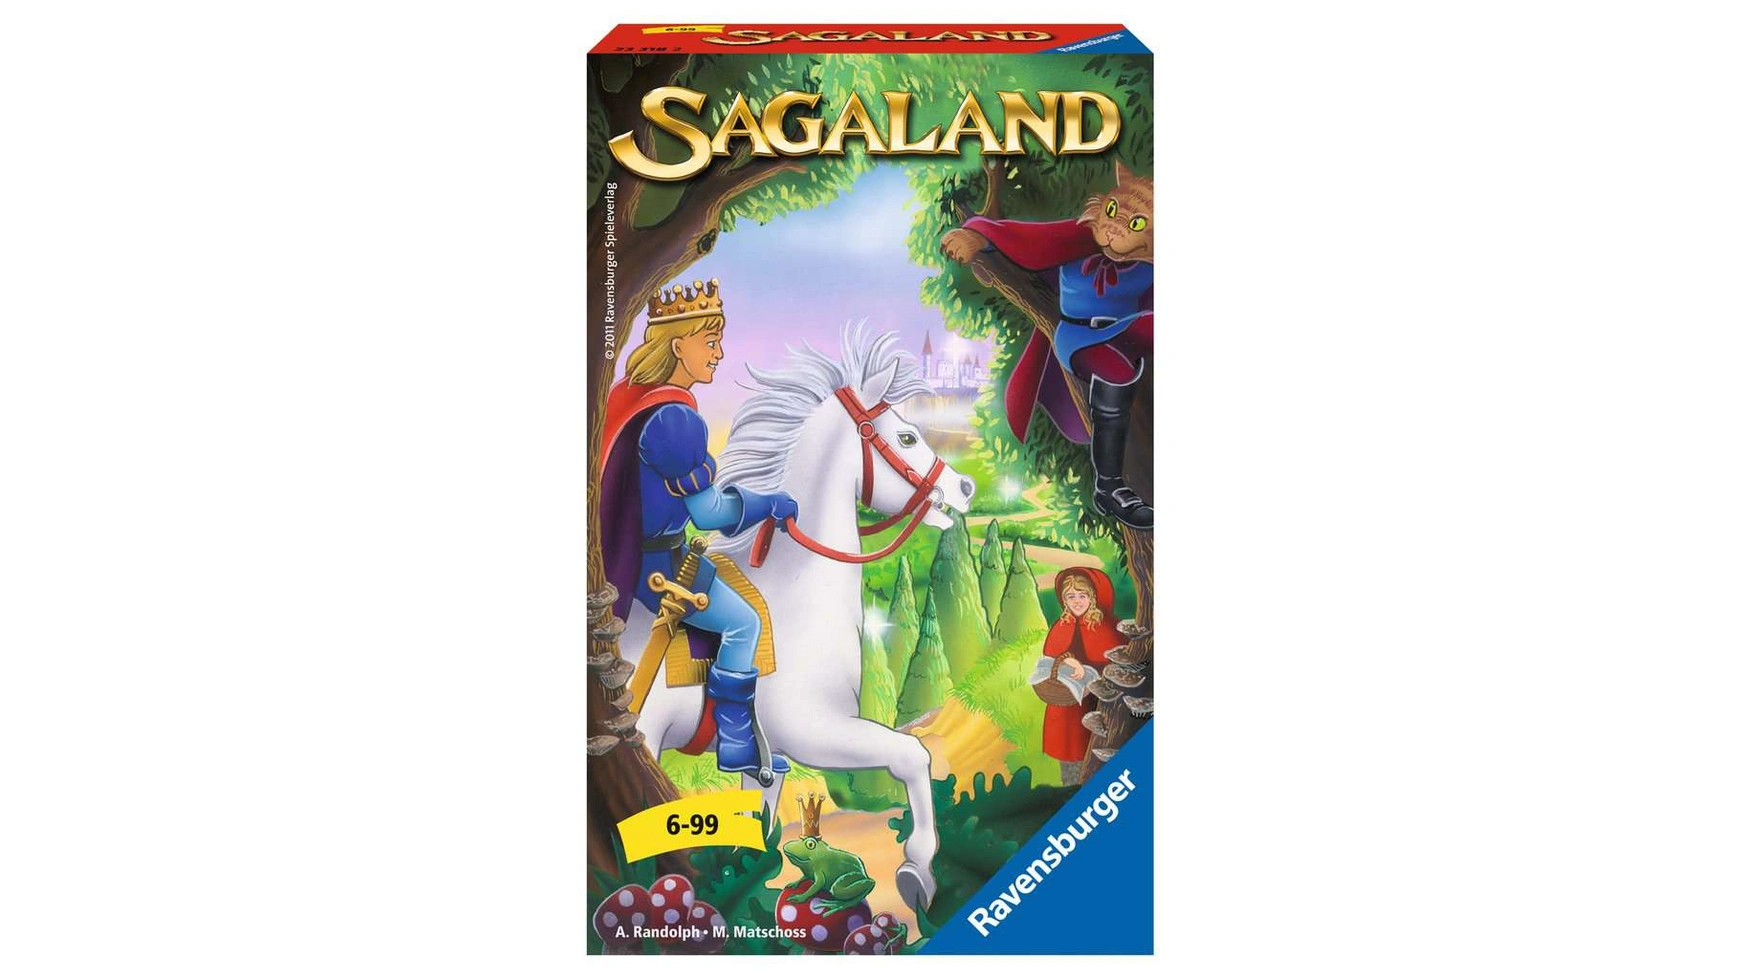 Ravensburger Spiele игра с собой Sagaland Junior мальцева валентина ефимовна тайны сказочного леса